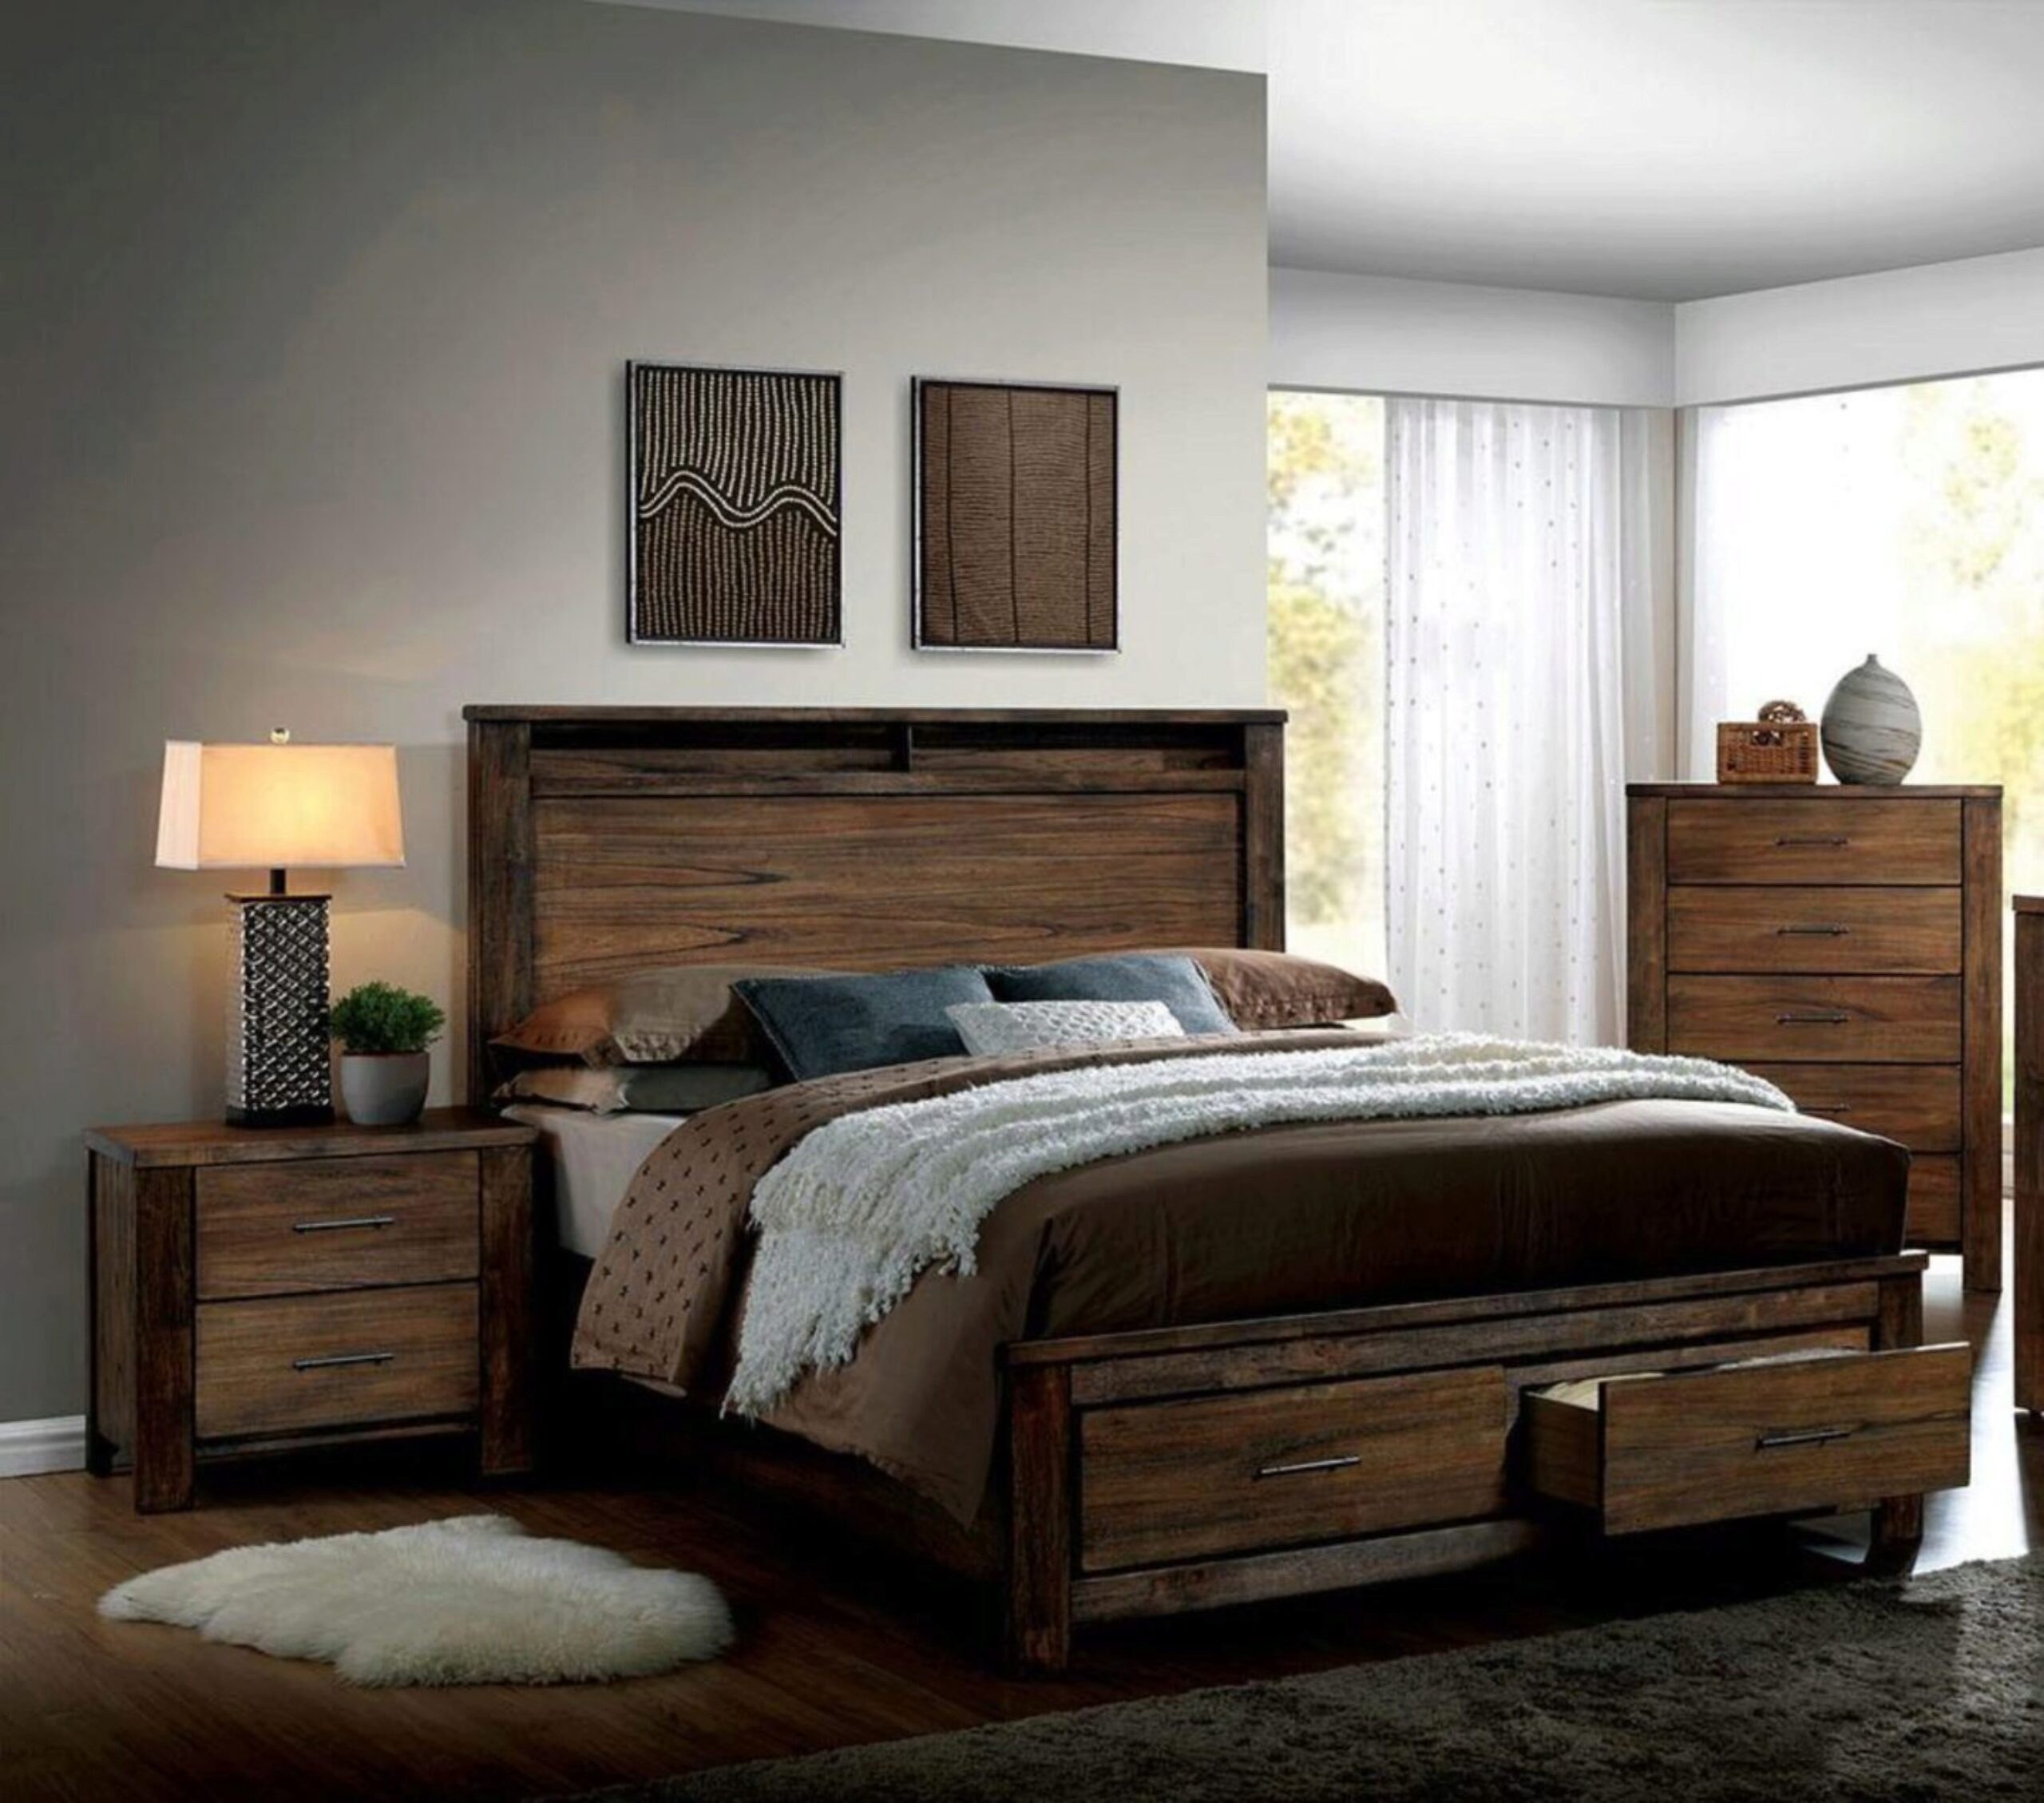 Спальня мебель дерево. Спальня с деревянной мебелью. Мебель под дерево для спальни. Спальня с деревянной мебелью в современном стиле. Спальный гарнитур из дерева.